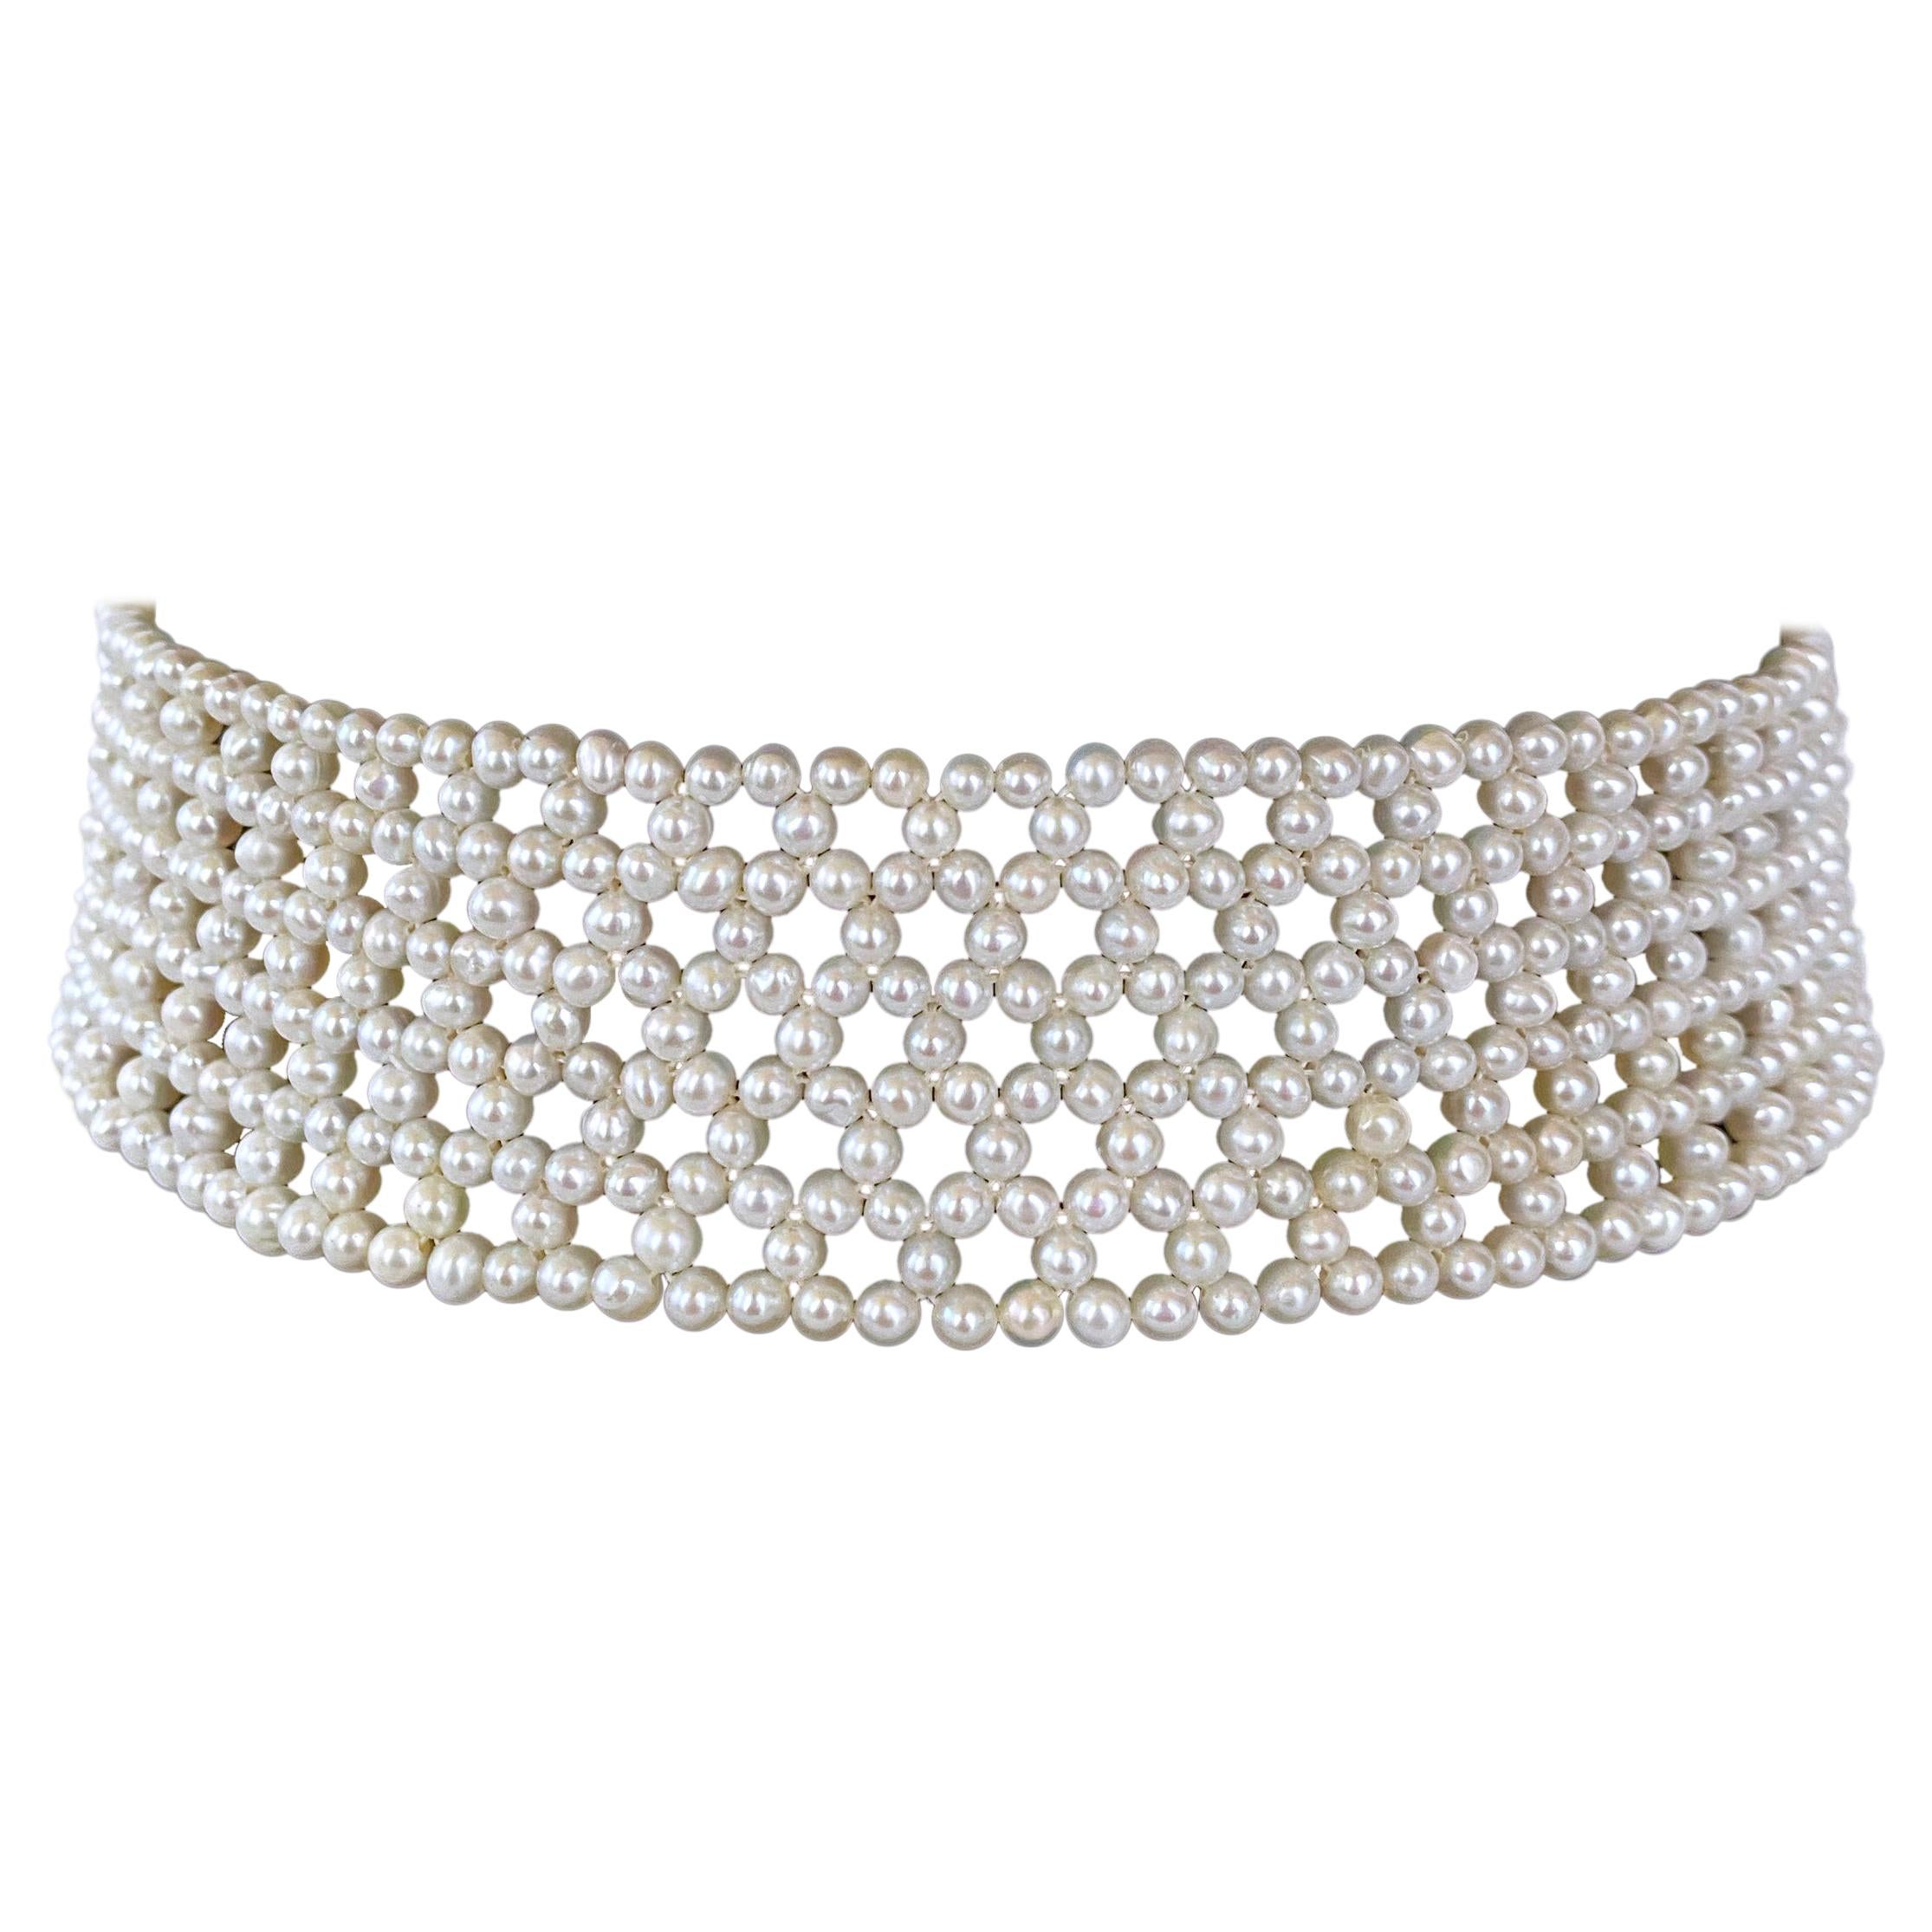 Marina J. Gewebtes Perlenhalsband aus Spitze mit rhodiniertem Silberverschluss